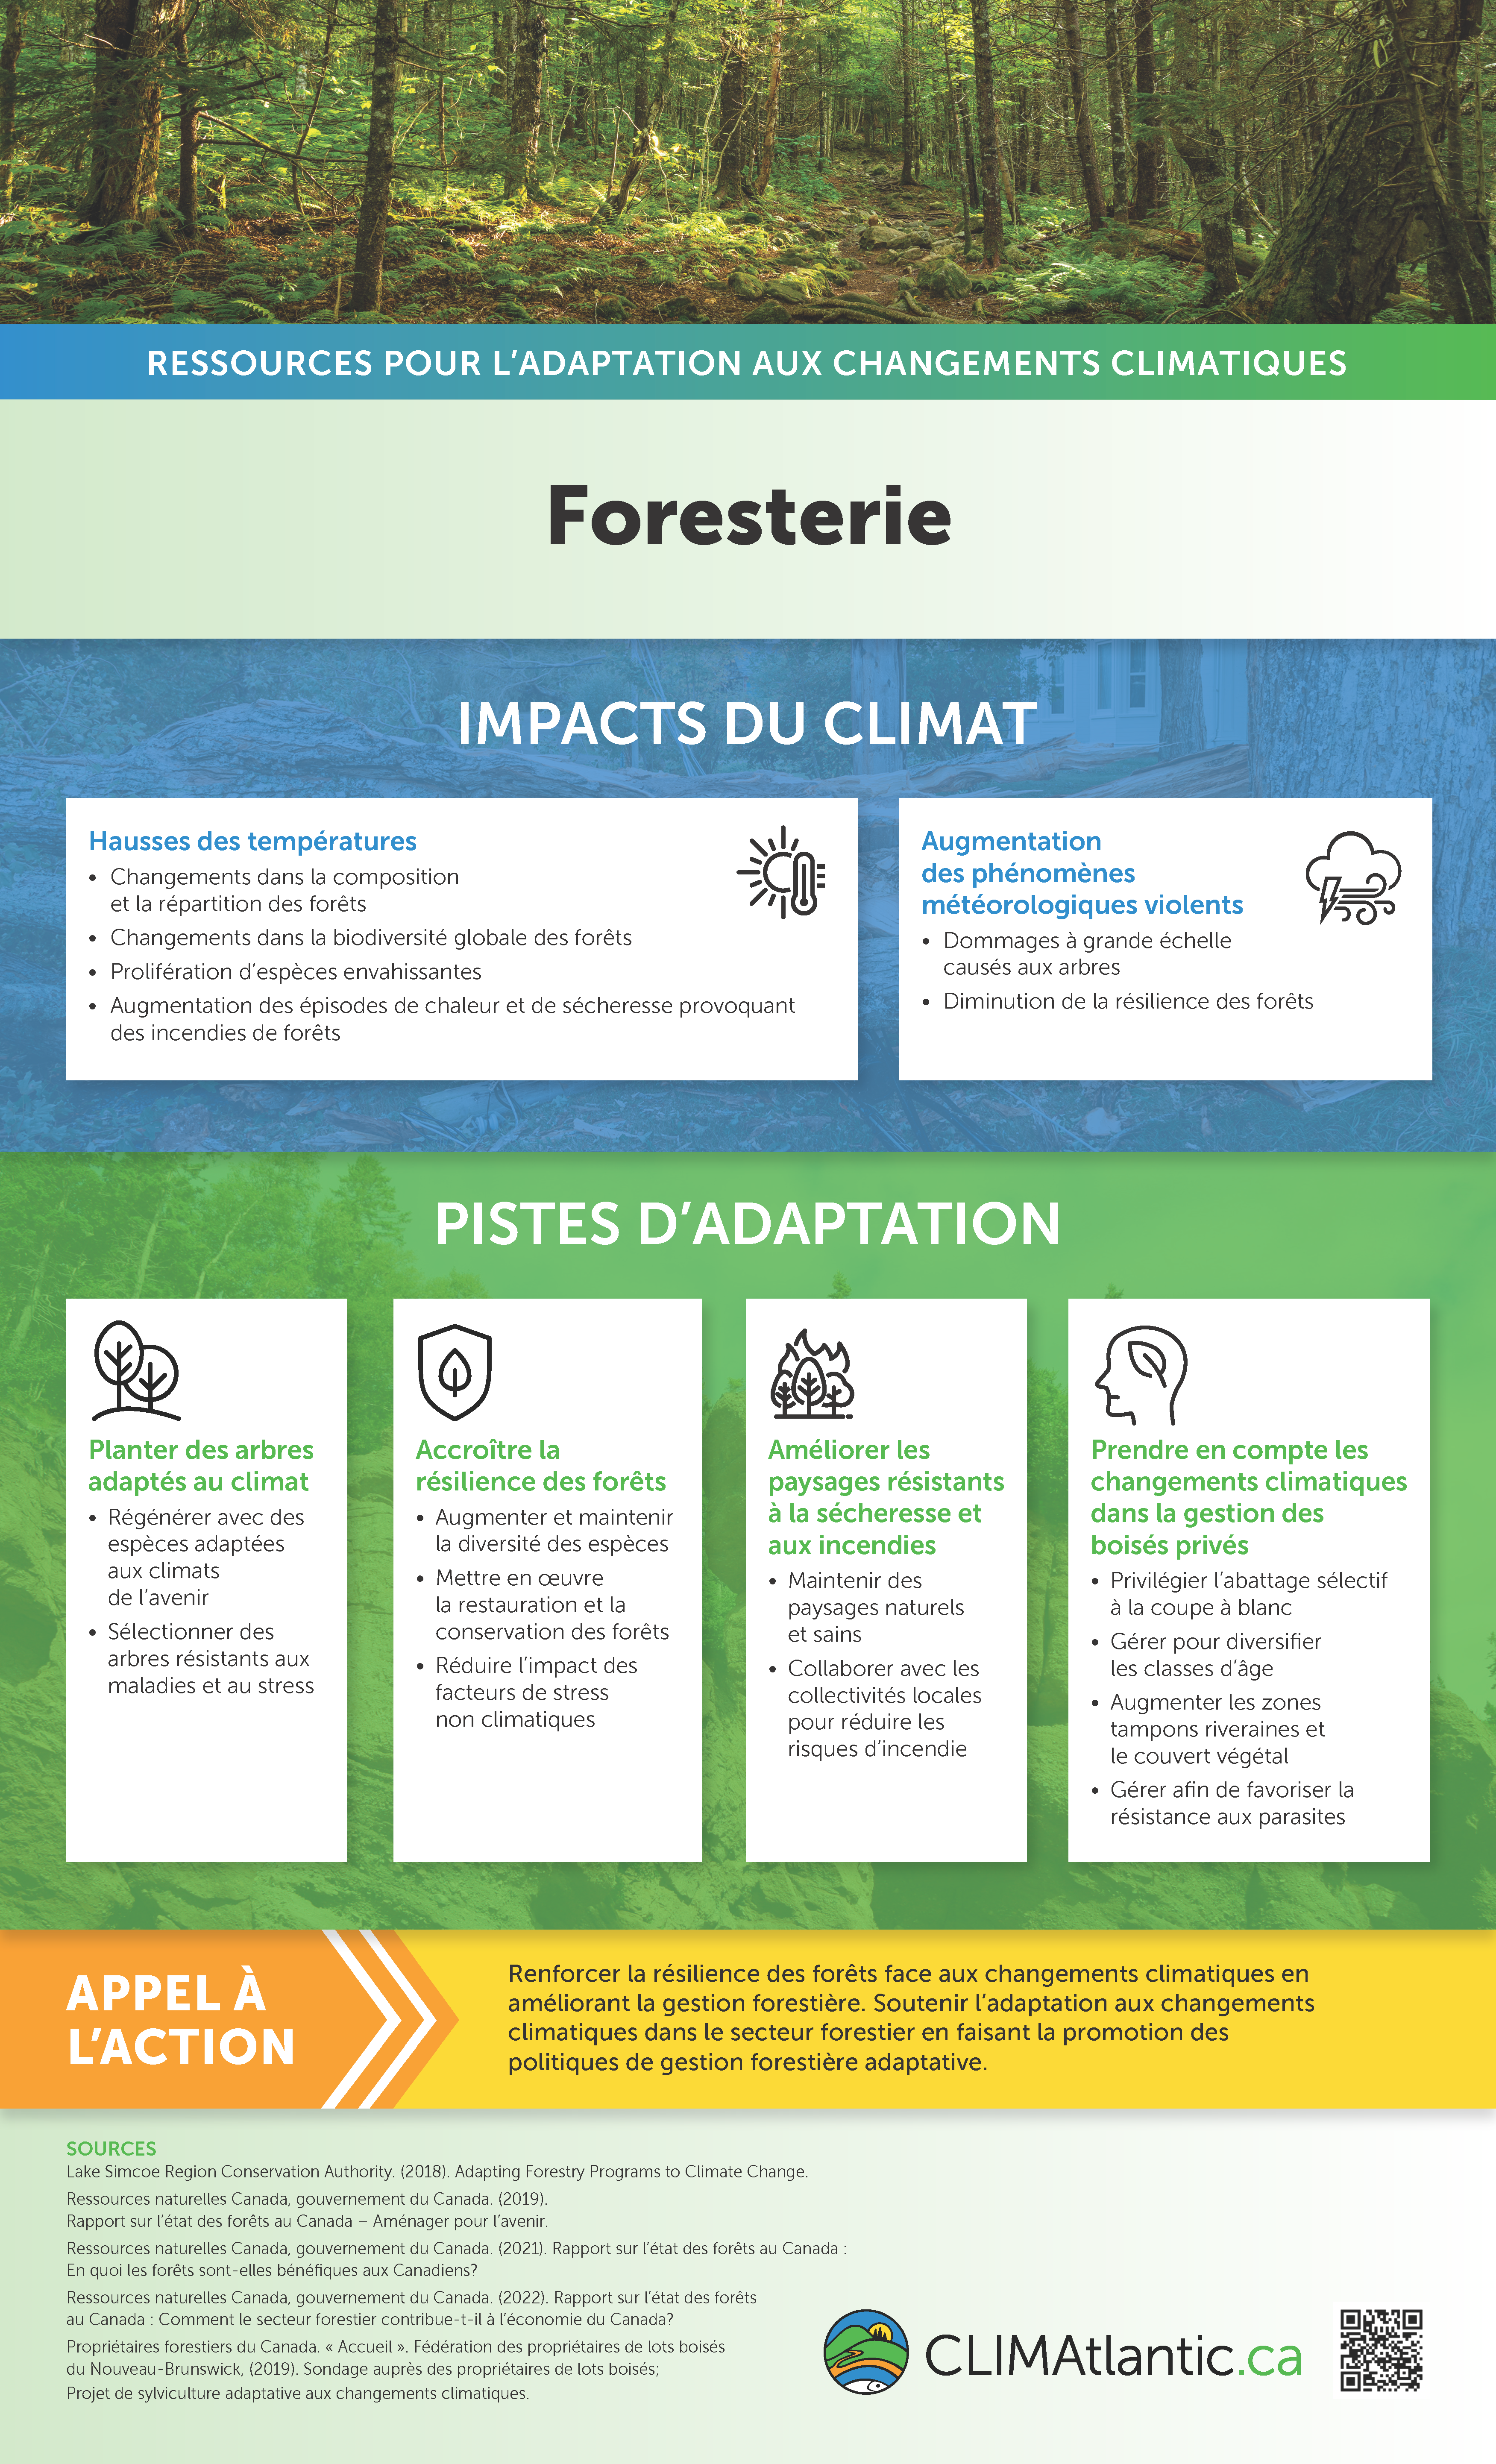 Une infographie expliquant les impacts des changements climatiques sur les forêts et suggérant des approches d'adaptation.